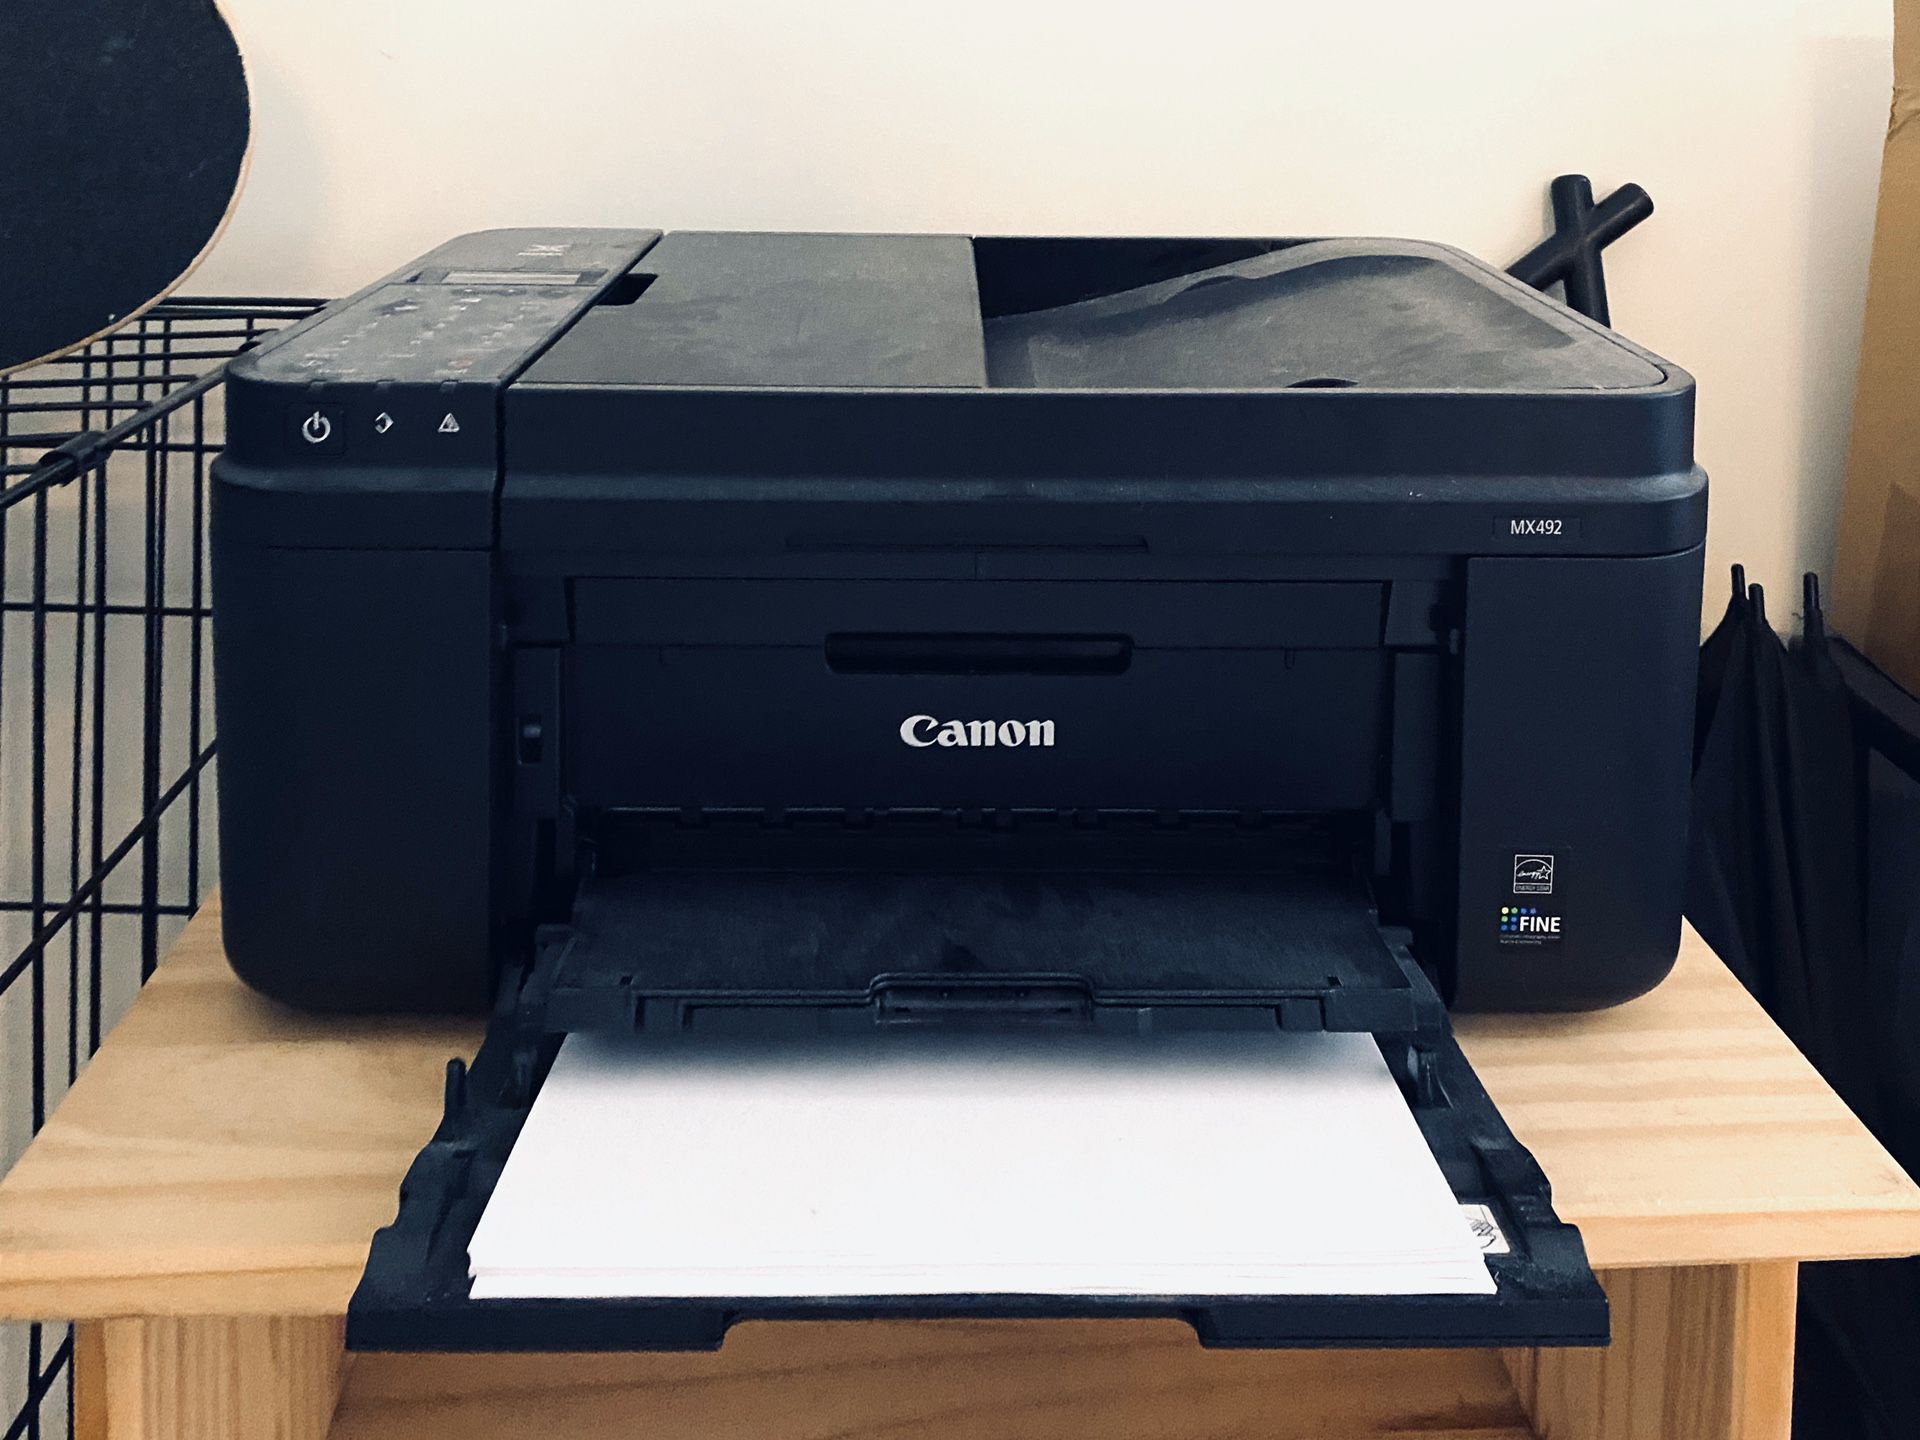 Cannon printer MX492